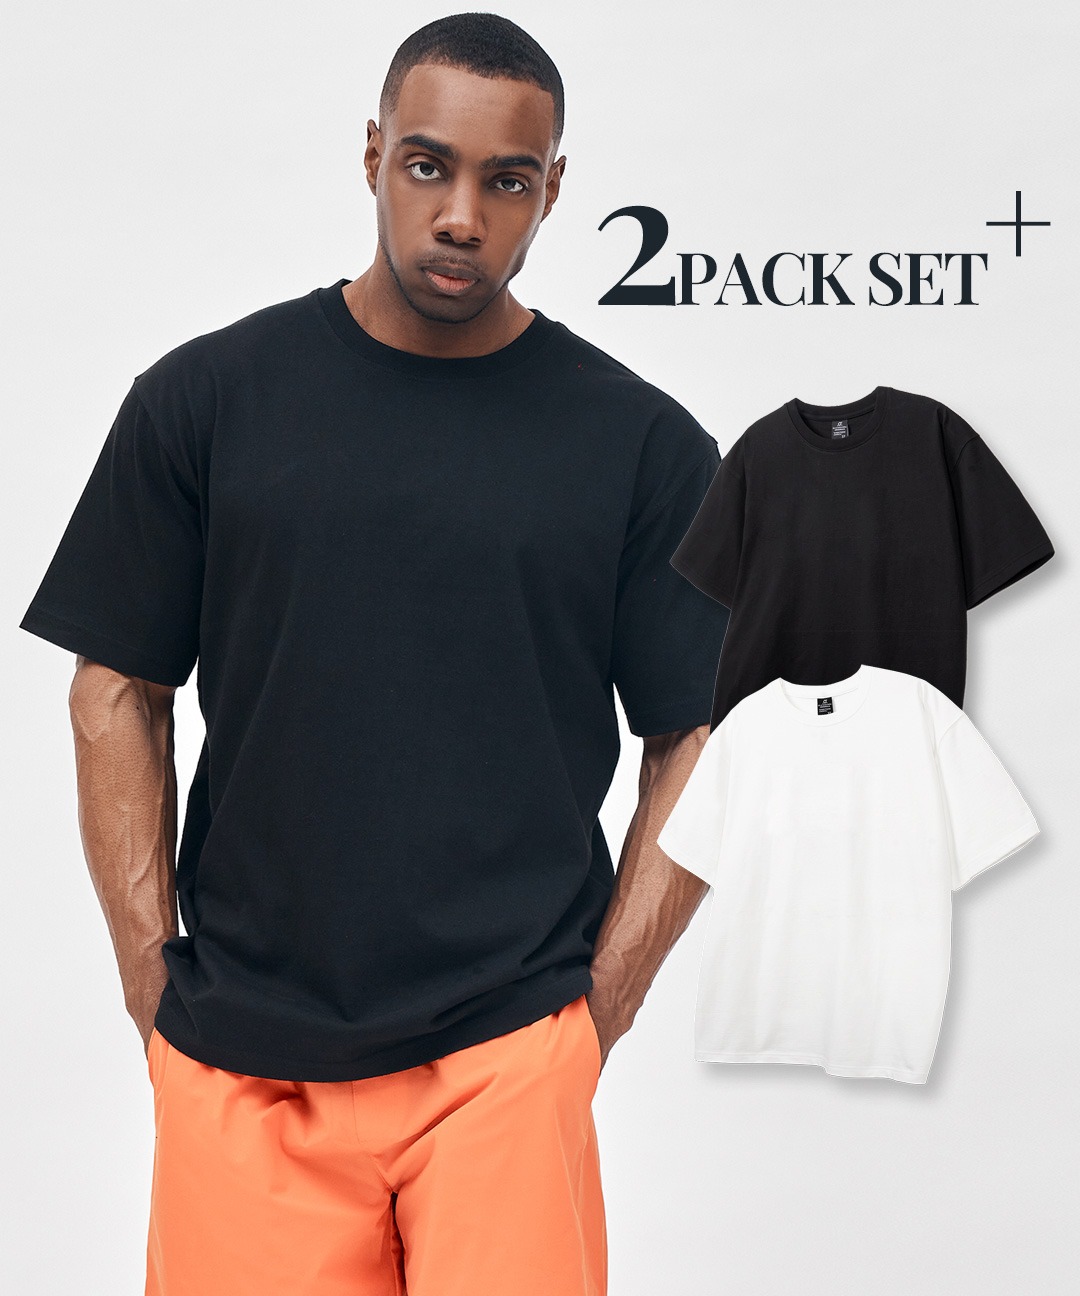 24SS 무지 스탠다스 반팔 티셔츠 (2PACK)